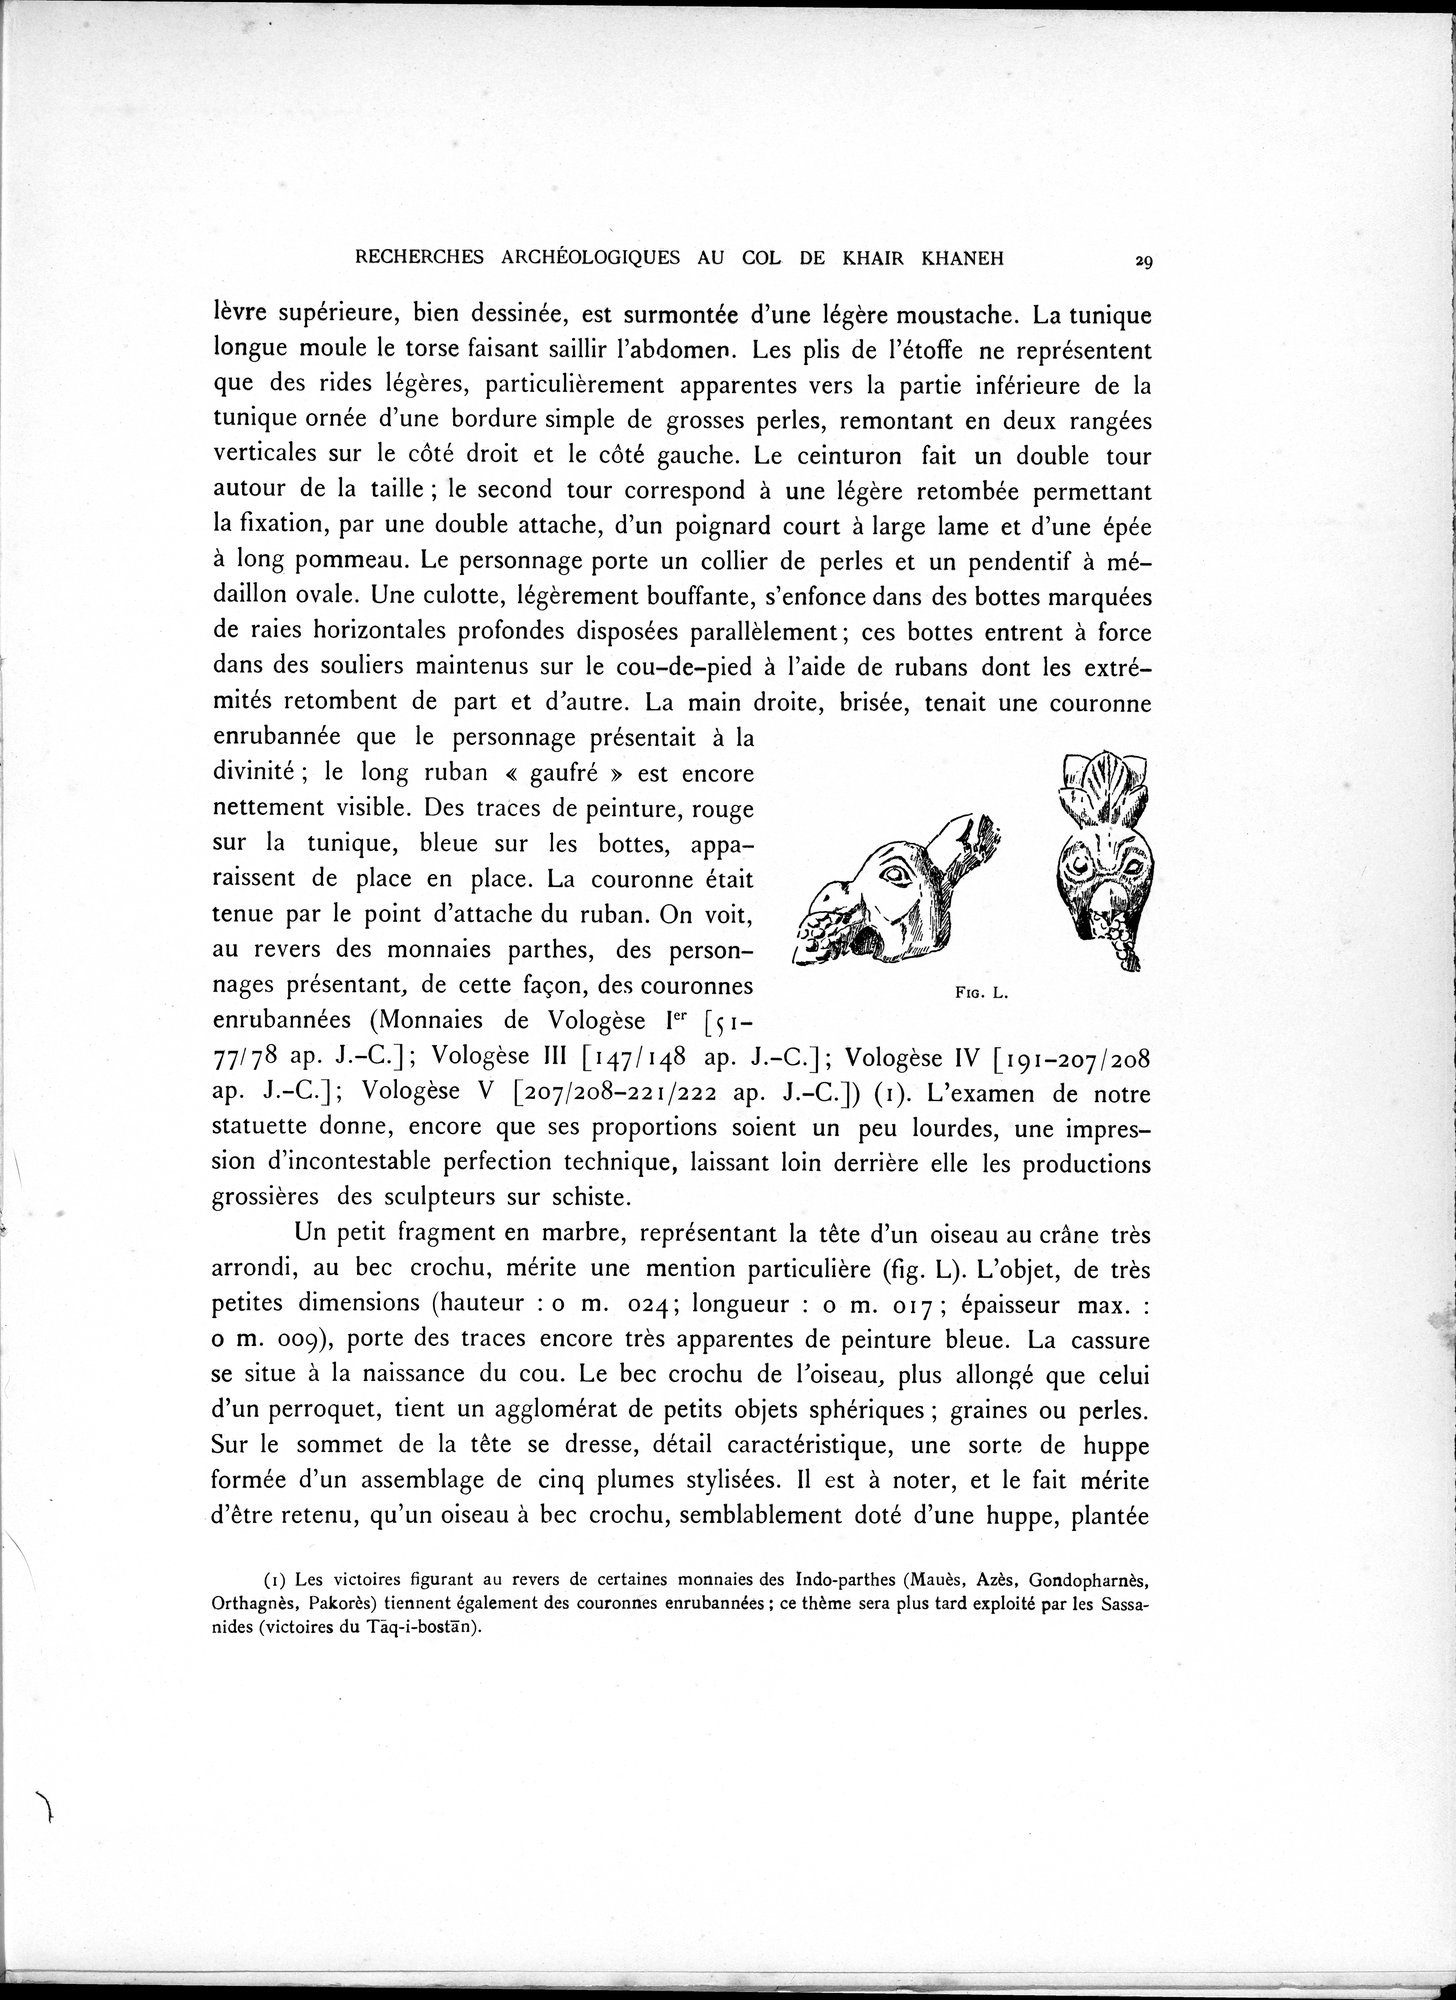 Recherches Archéologiques au Col de Khair khaneh près de Kābul : vol.1 / Page 39 (Grayscale High Resolution Image)